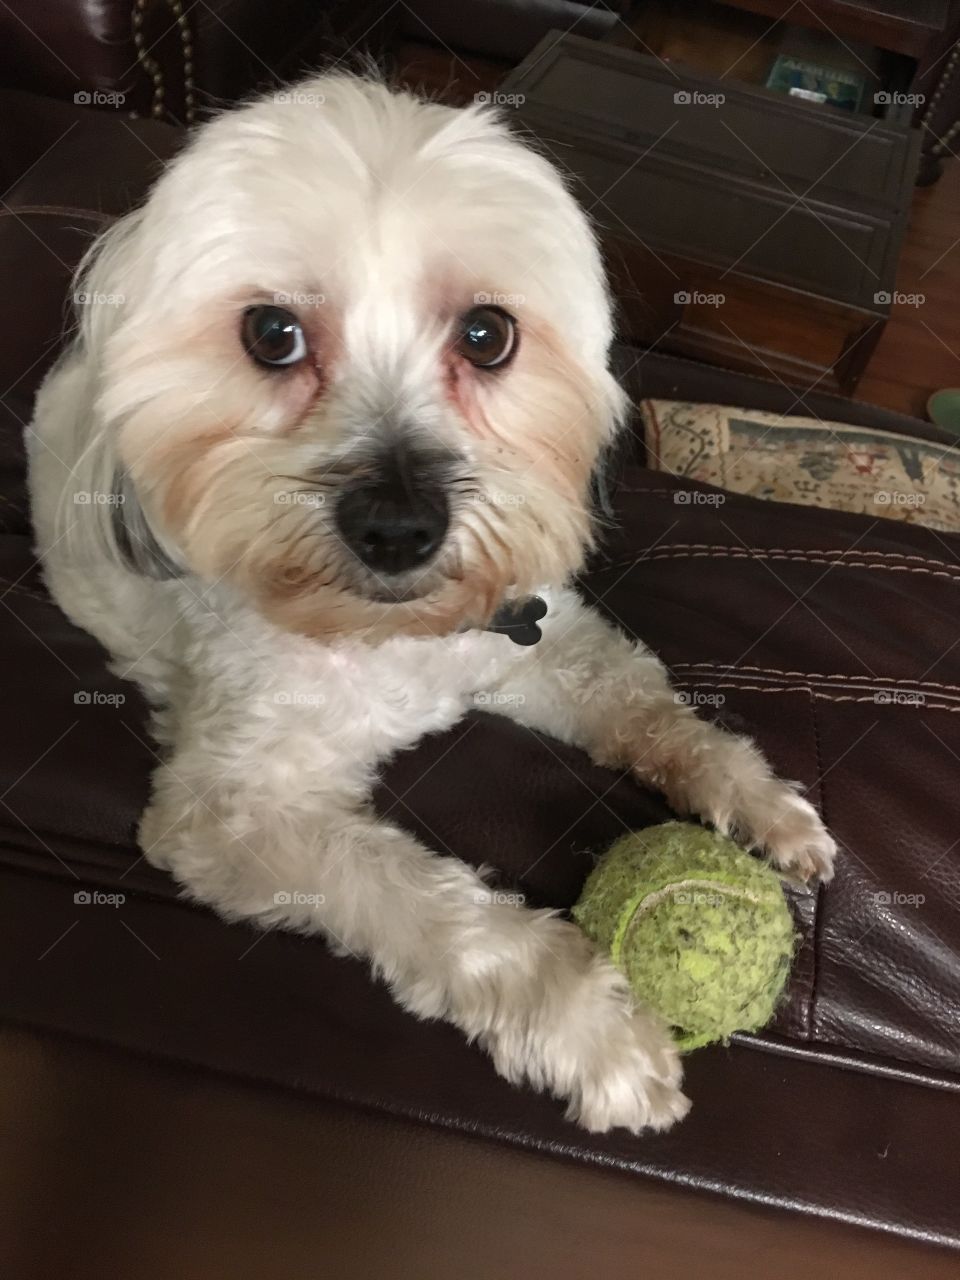 Oreo & his ball.